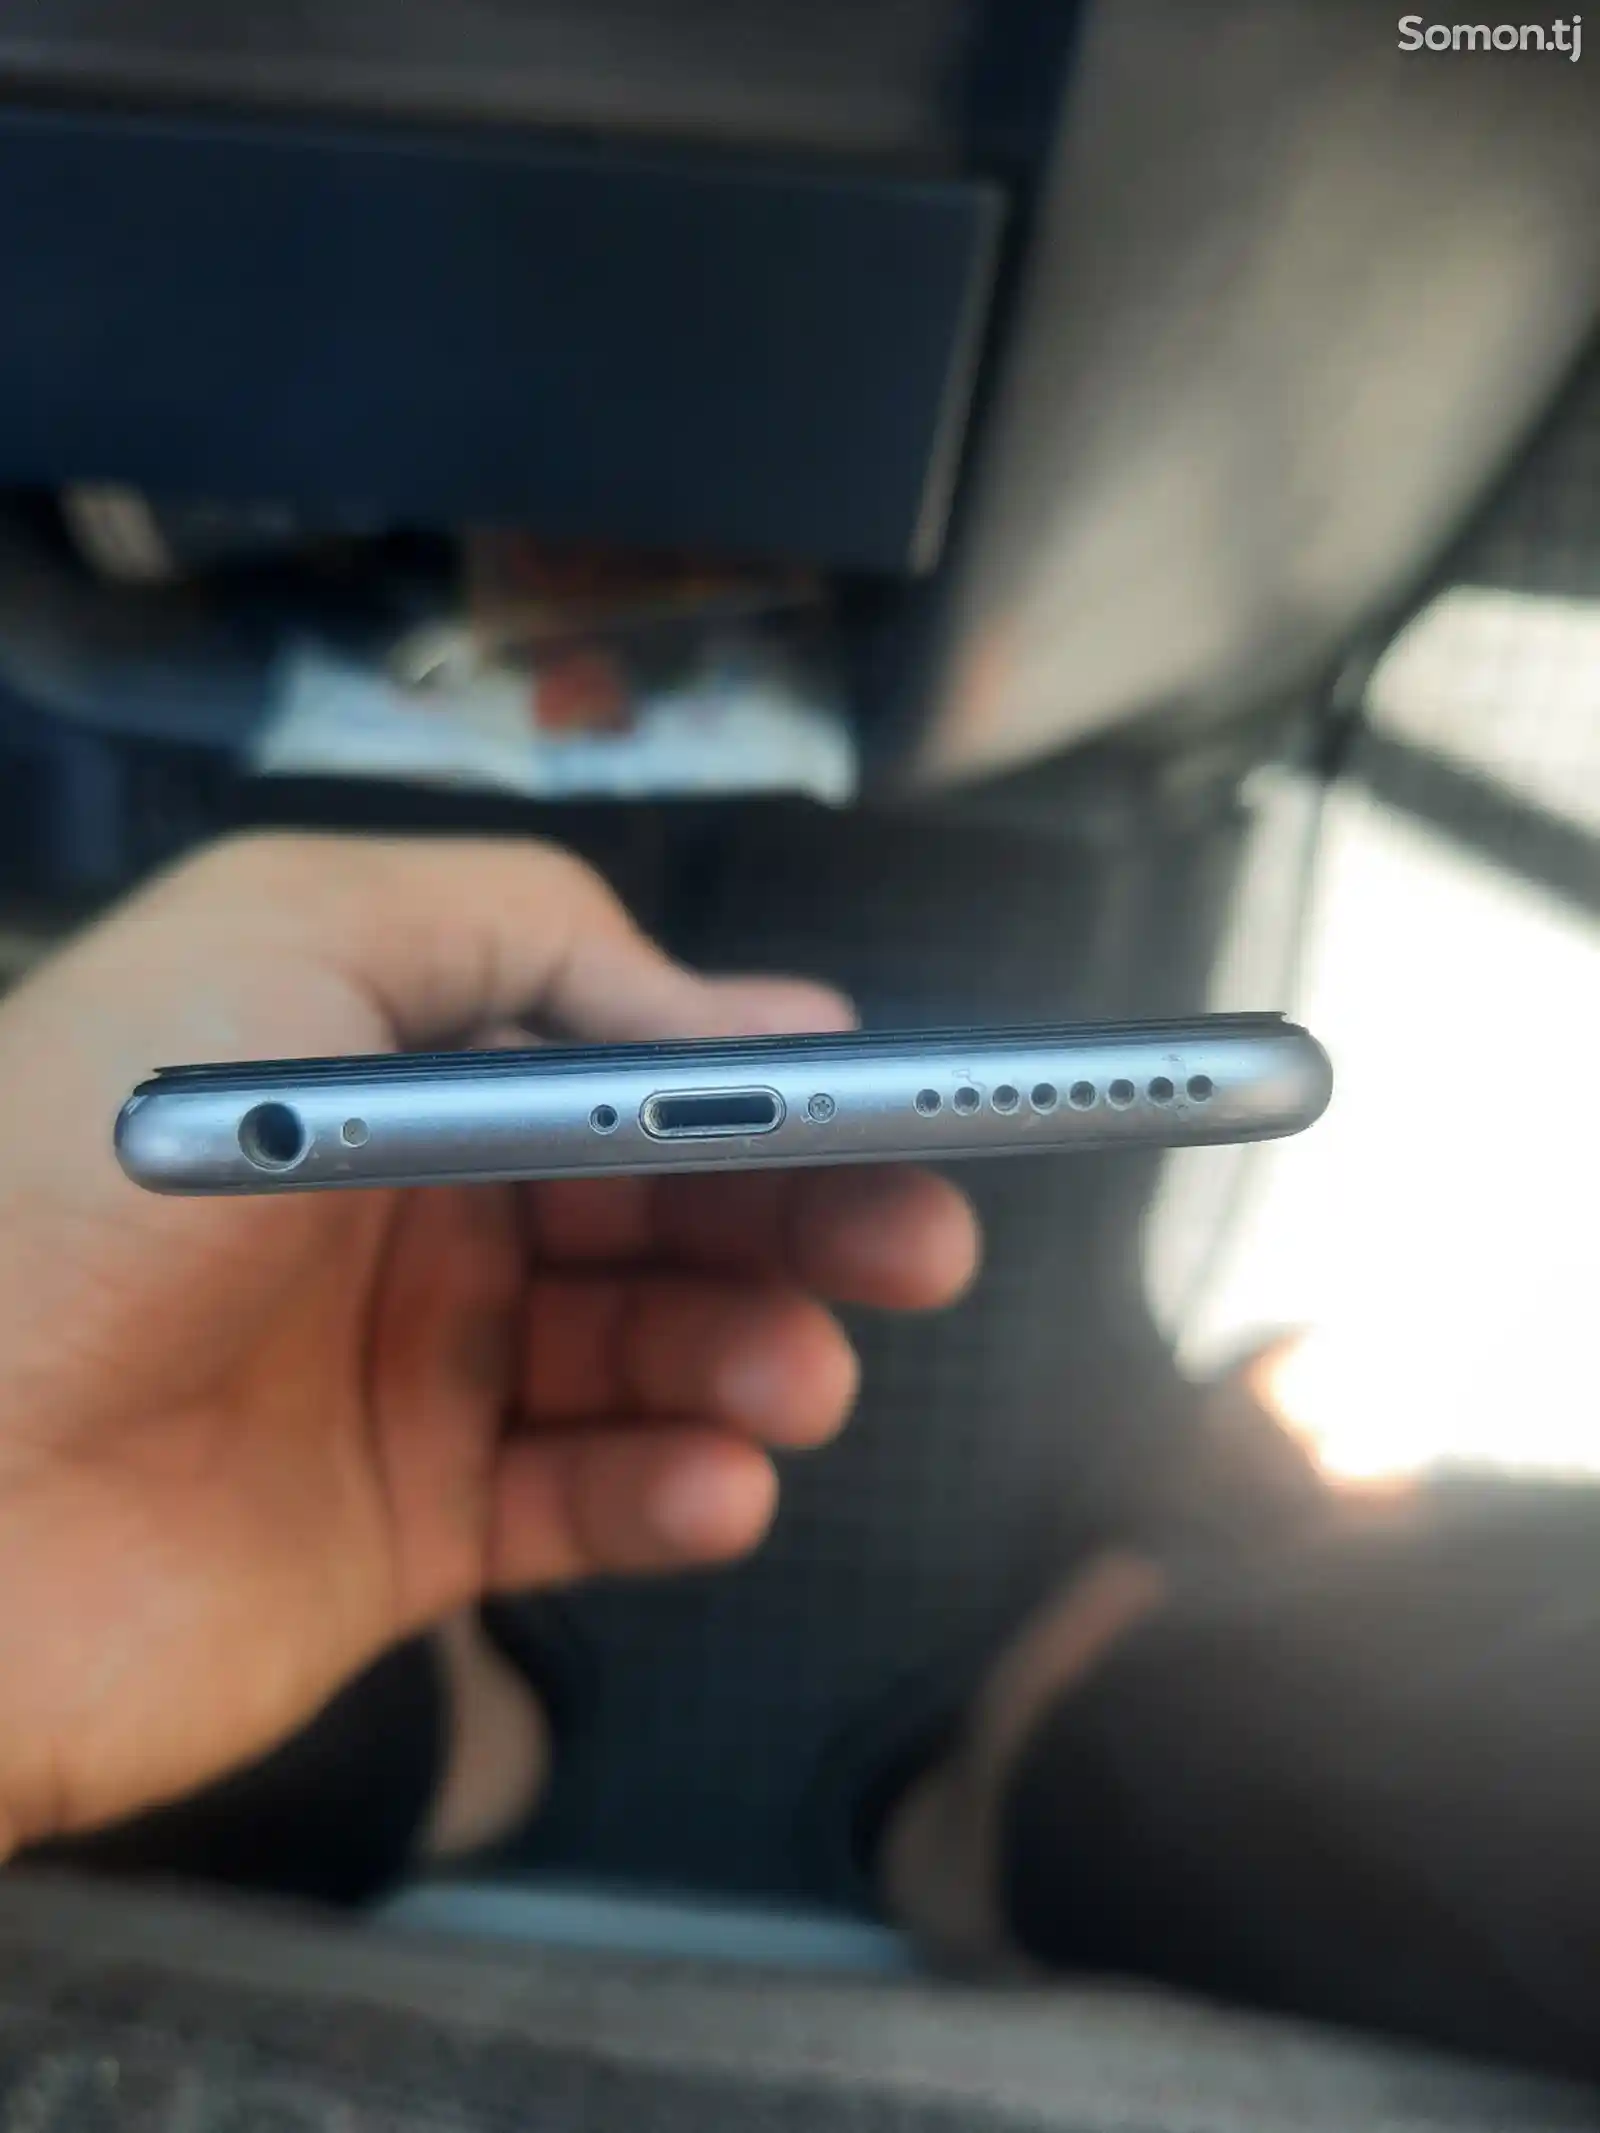 Apple iPhone 6S plus, 64 gb-3